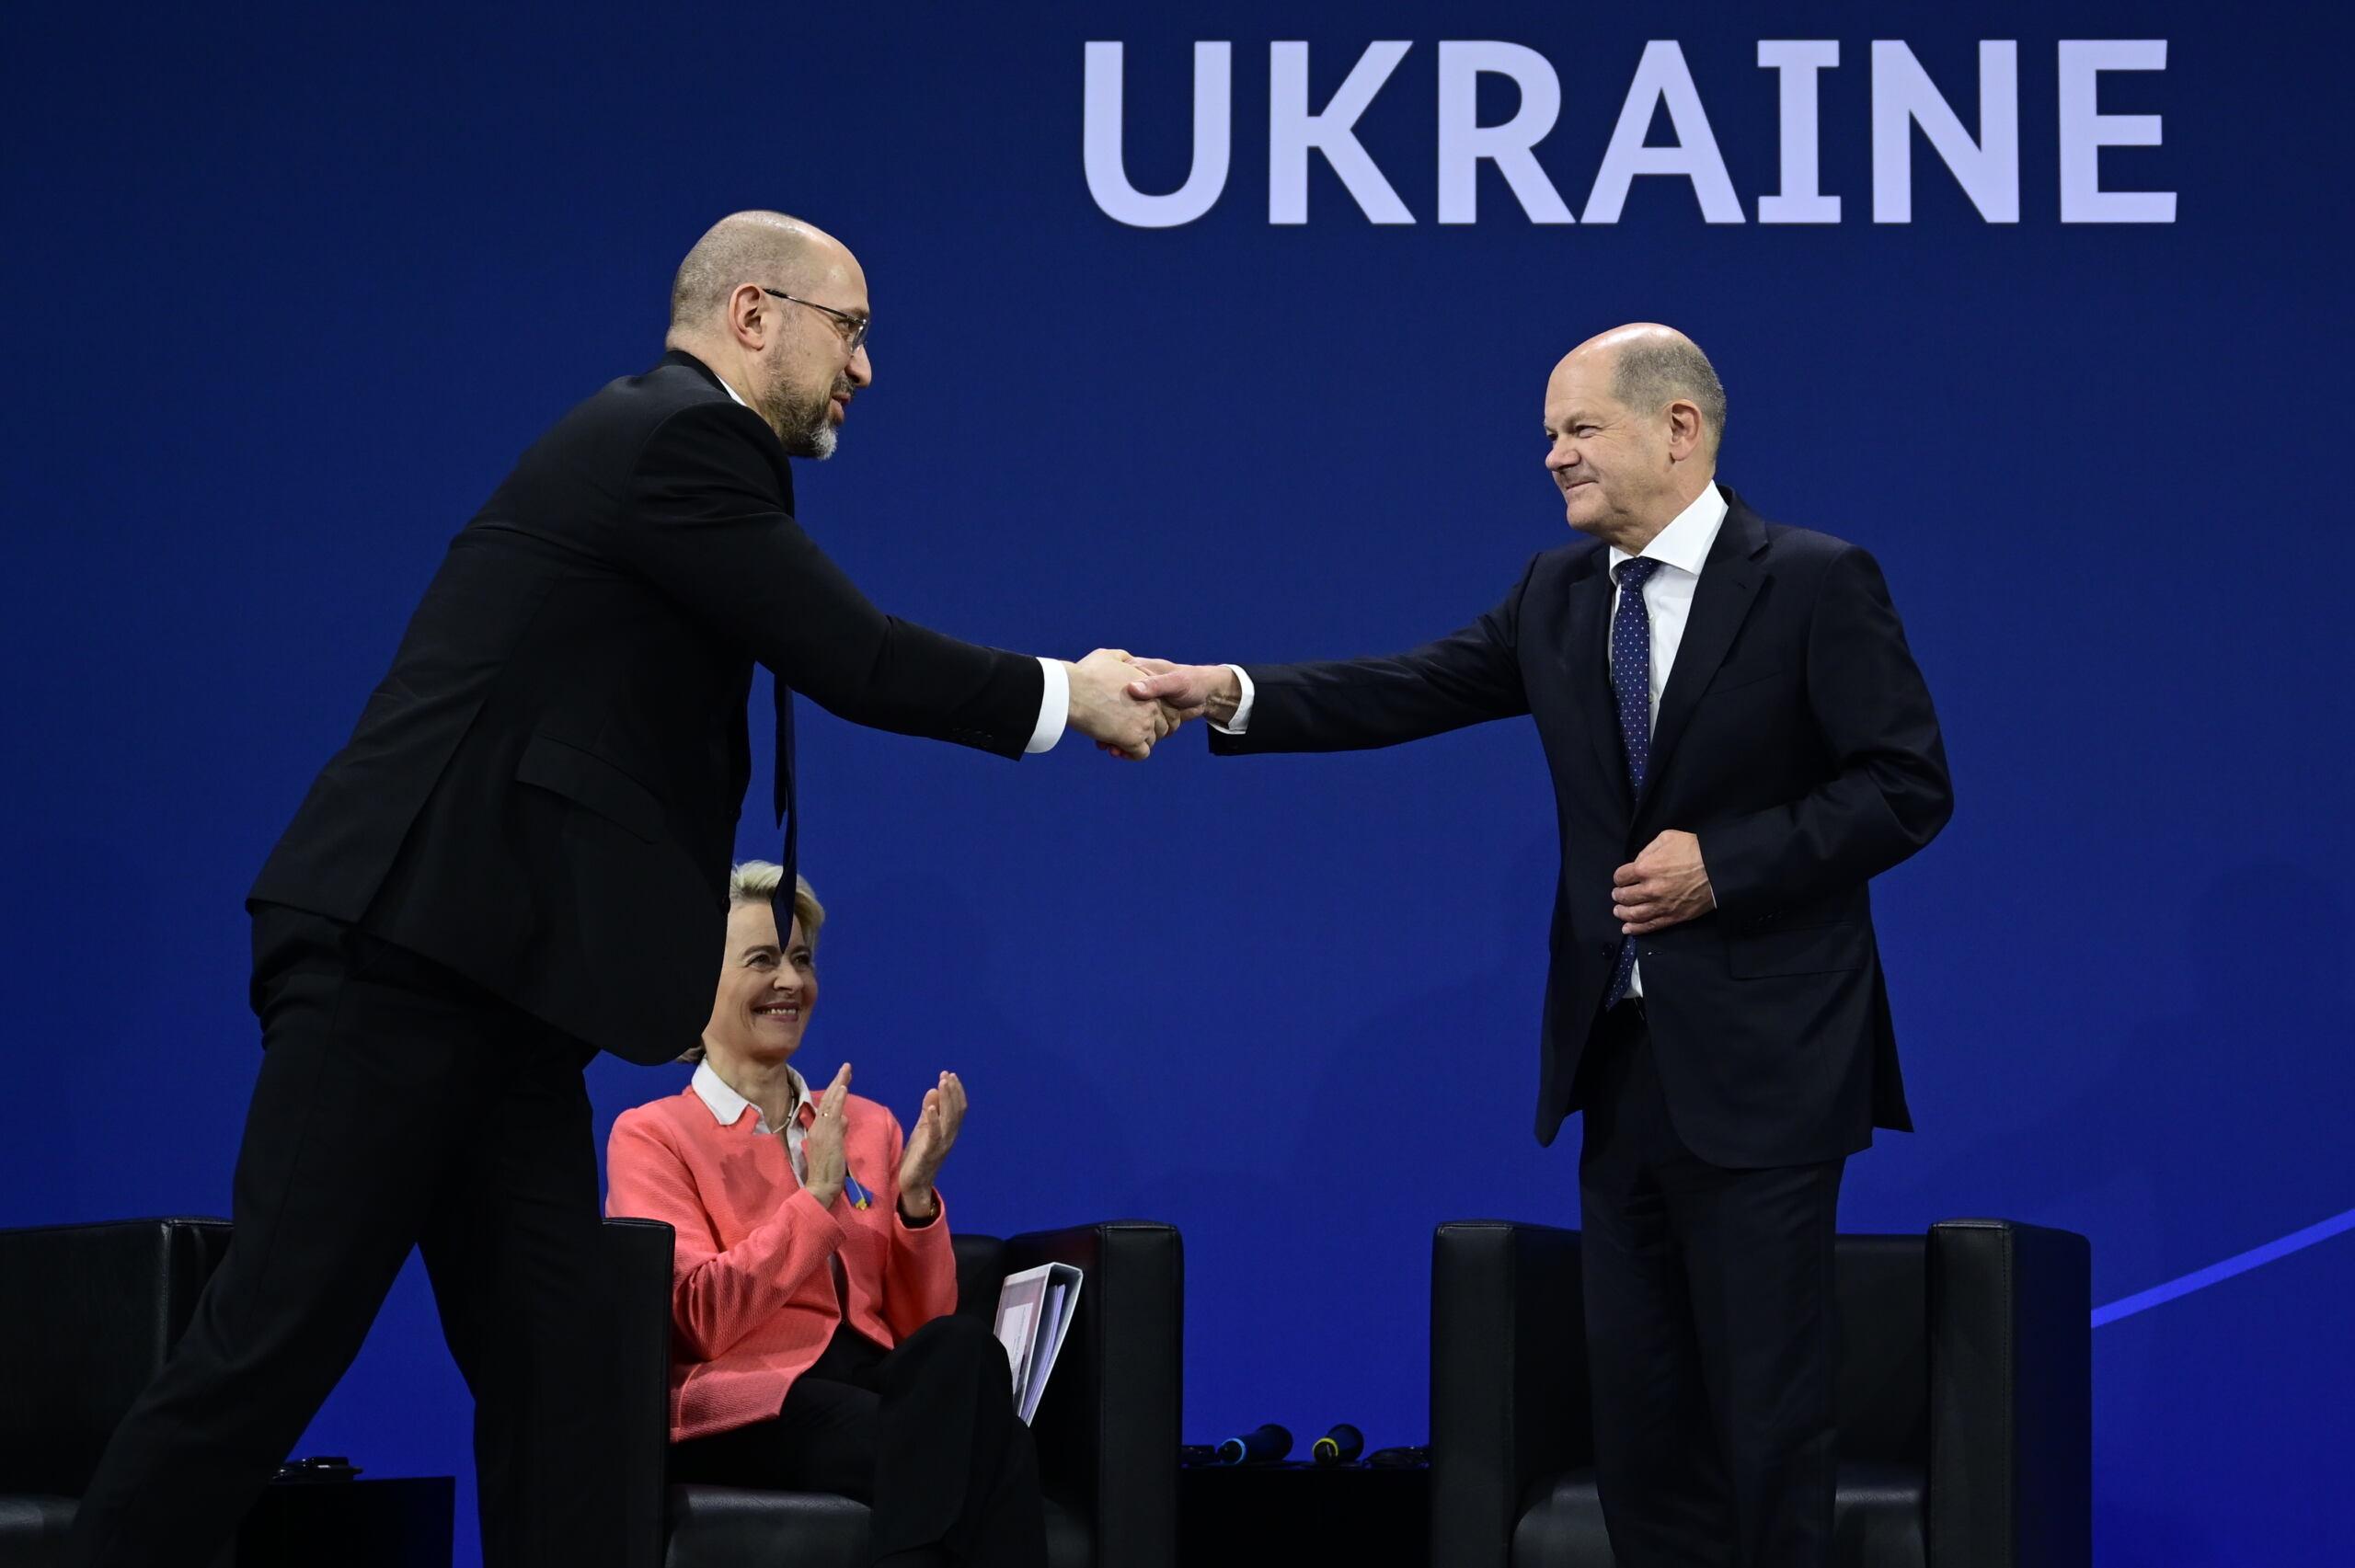 Premier Ukrainy na scenie śsciska rękę kanclerza Nioemiec, w tele siedzi Ursula von der Leyen